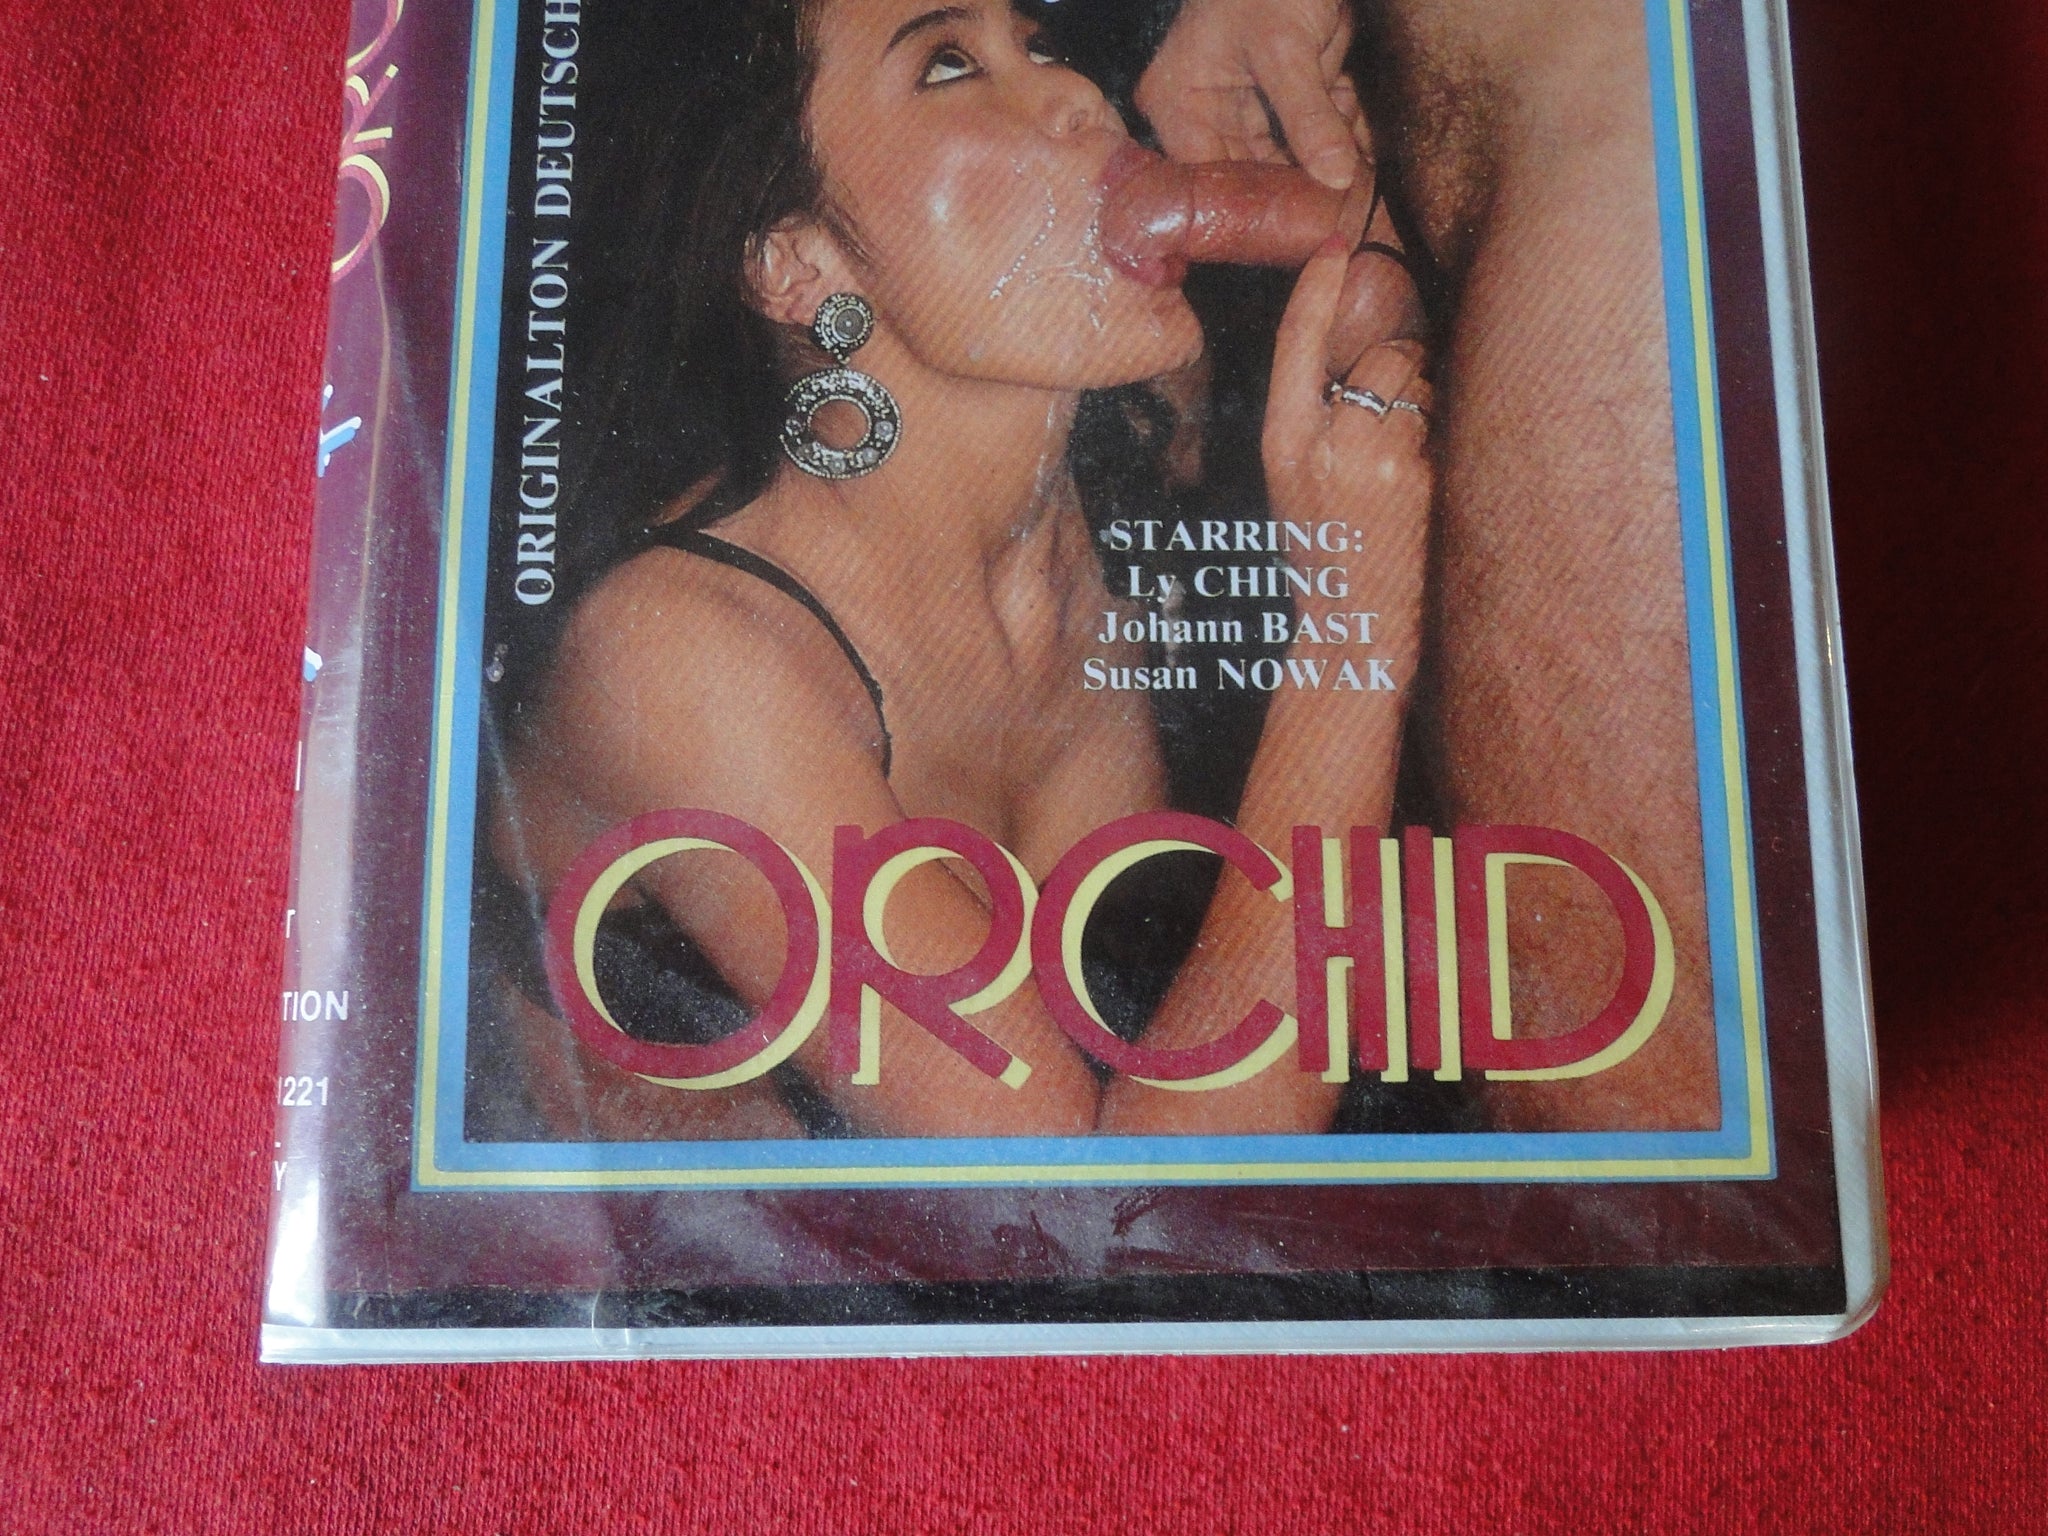 Vintage Erotic Asian Porn - Vintage Erotic Adult XXX VHS Porn Tape Bizarre Asian Orchid CI â€“ Ephemera  Galore